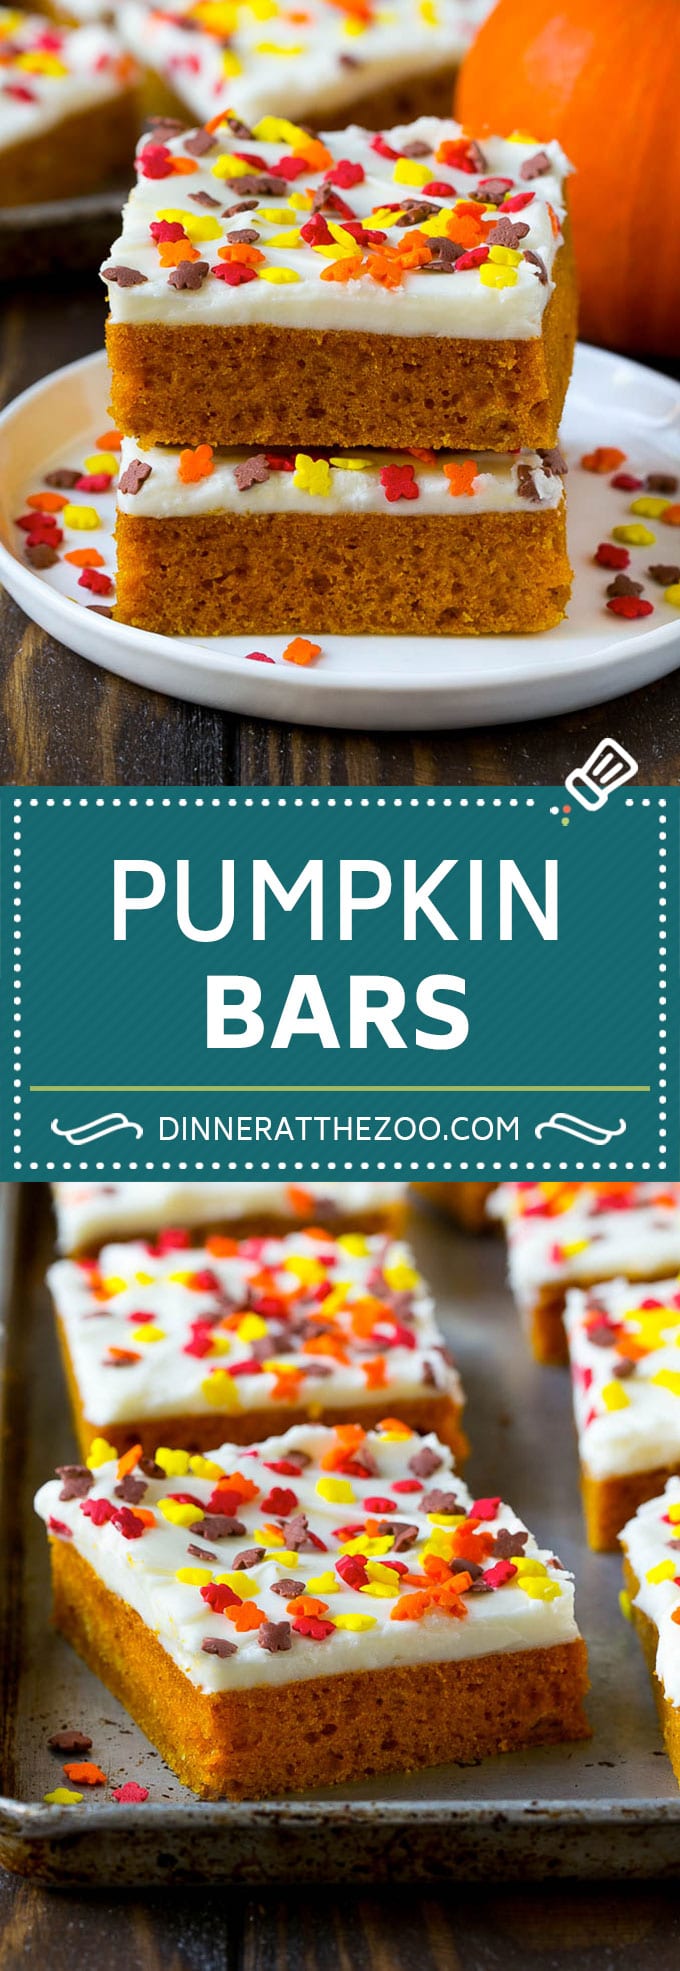 Pumpkin Bars Recipe | Pumpkin Cake | Pumpkin Dessert #pumpkin #fall #dessert #dinneratthezoo #thanksgiving